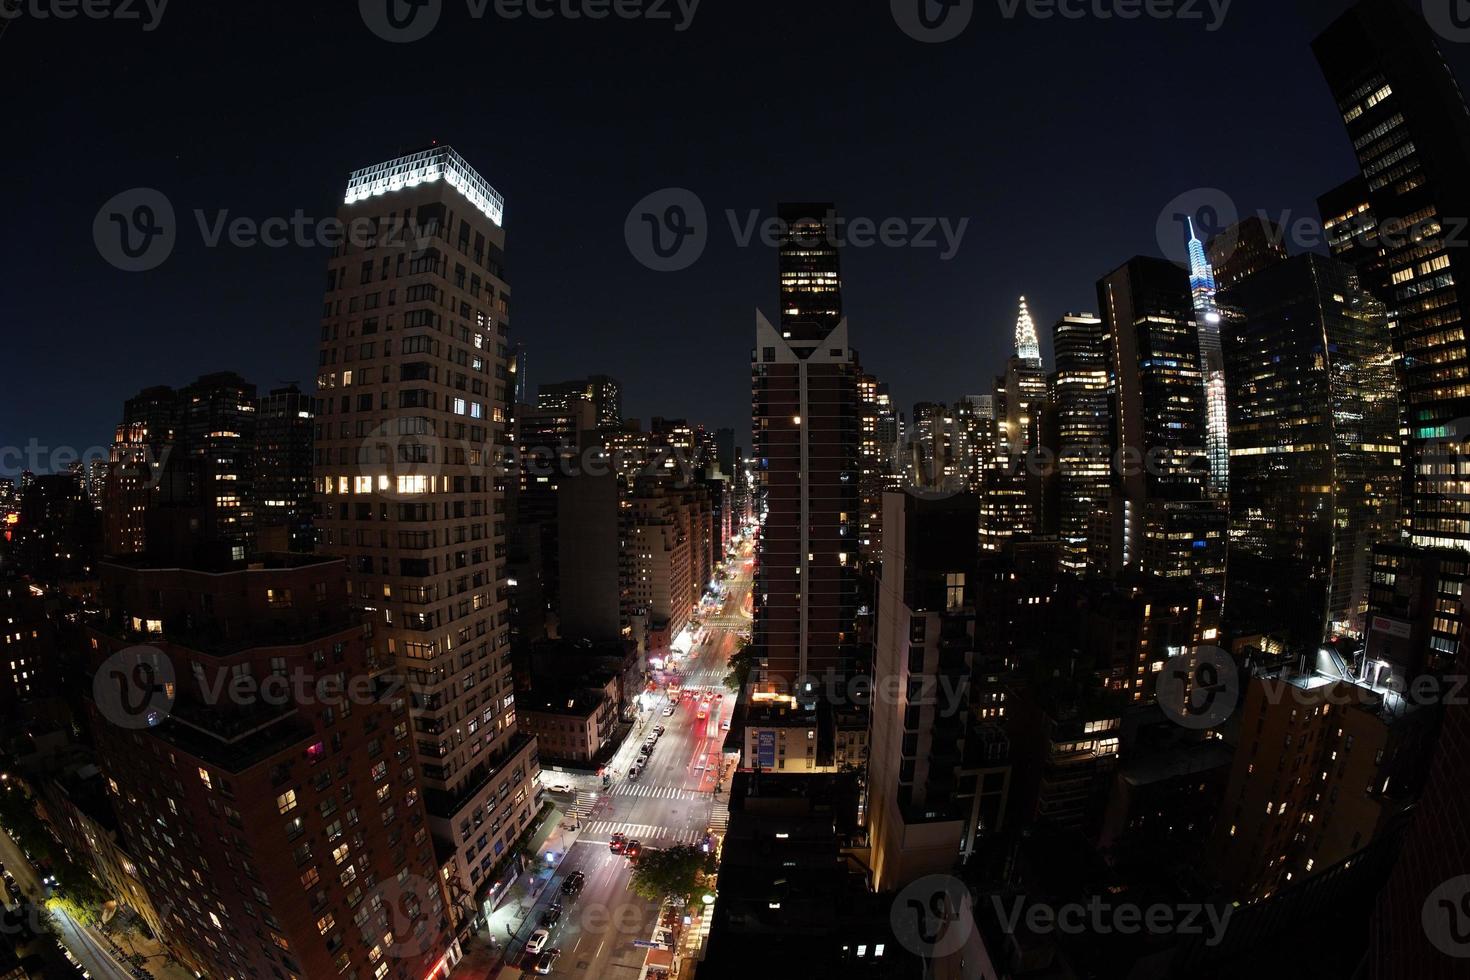 paisaje urbano aéreo nocturno de la ciudad de nueva york desde la azotea de la terraza foto